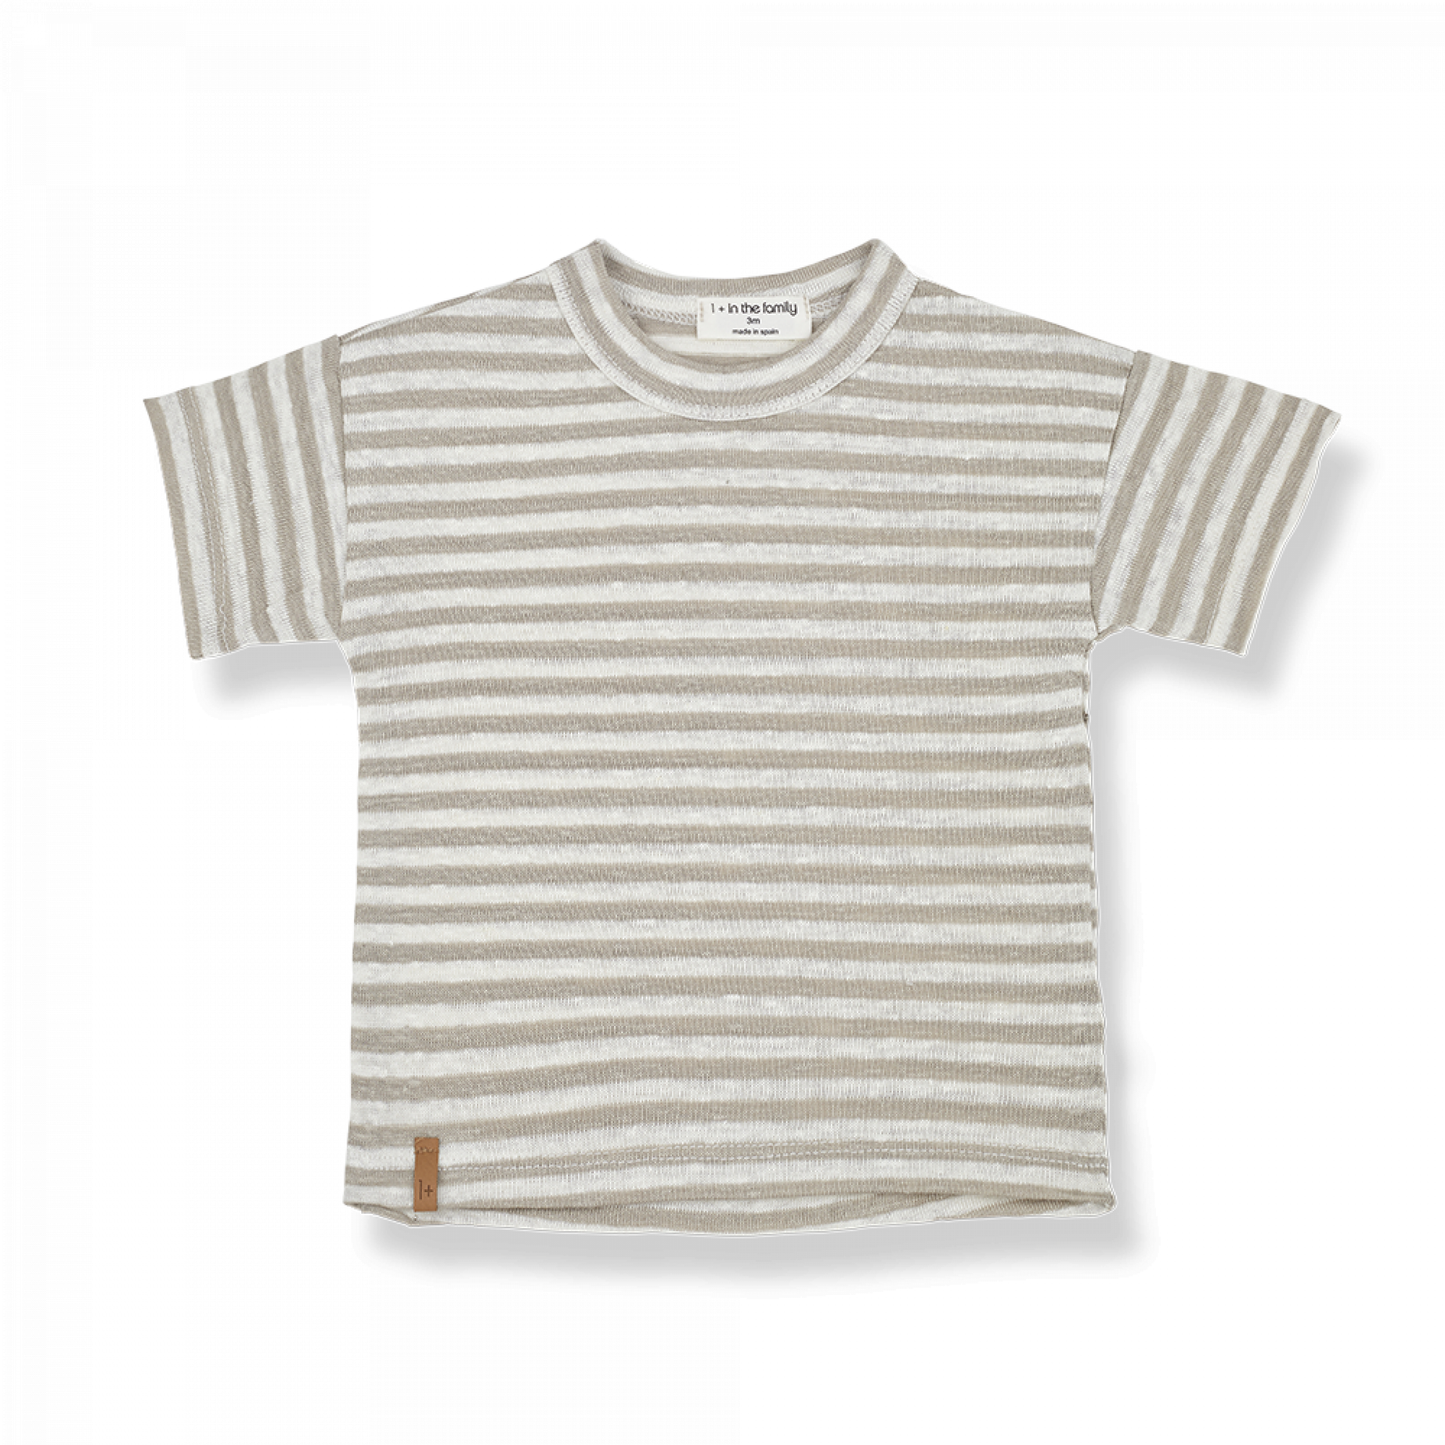 Streifen Shirt - Beige/Ivory